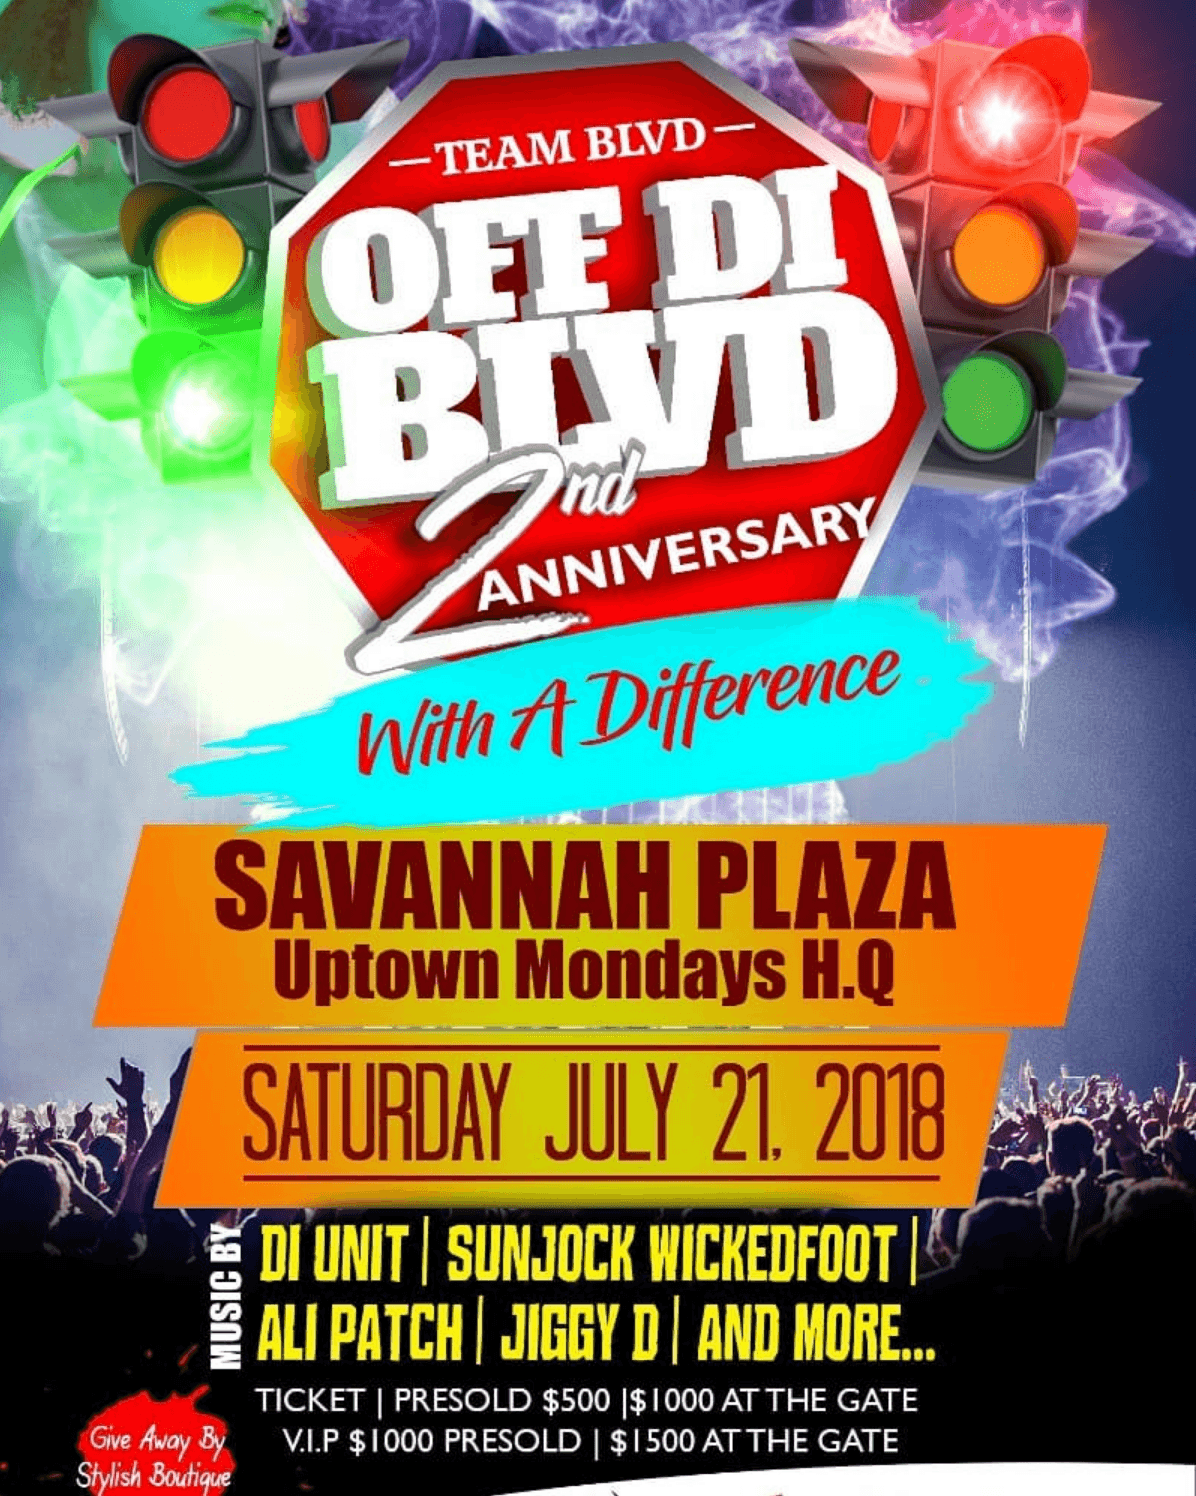 Off Di Blvd: 2nd Anniversary